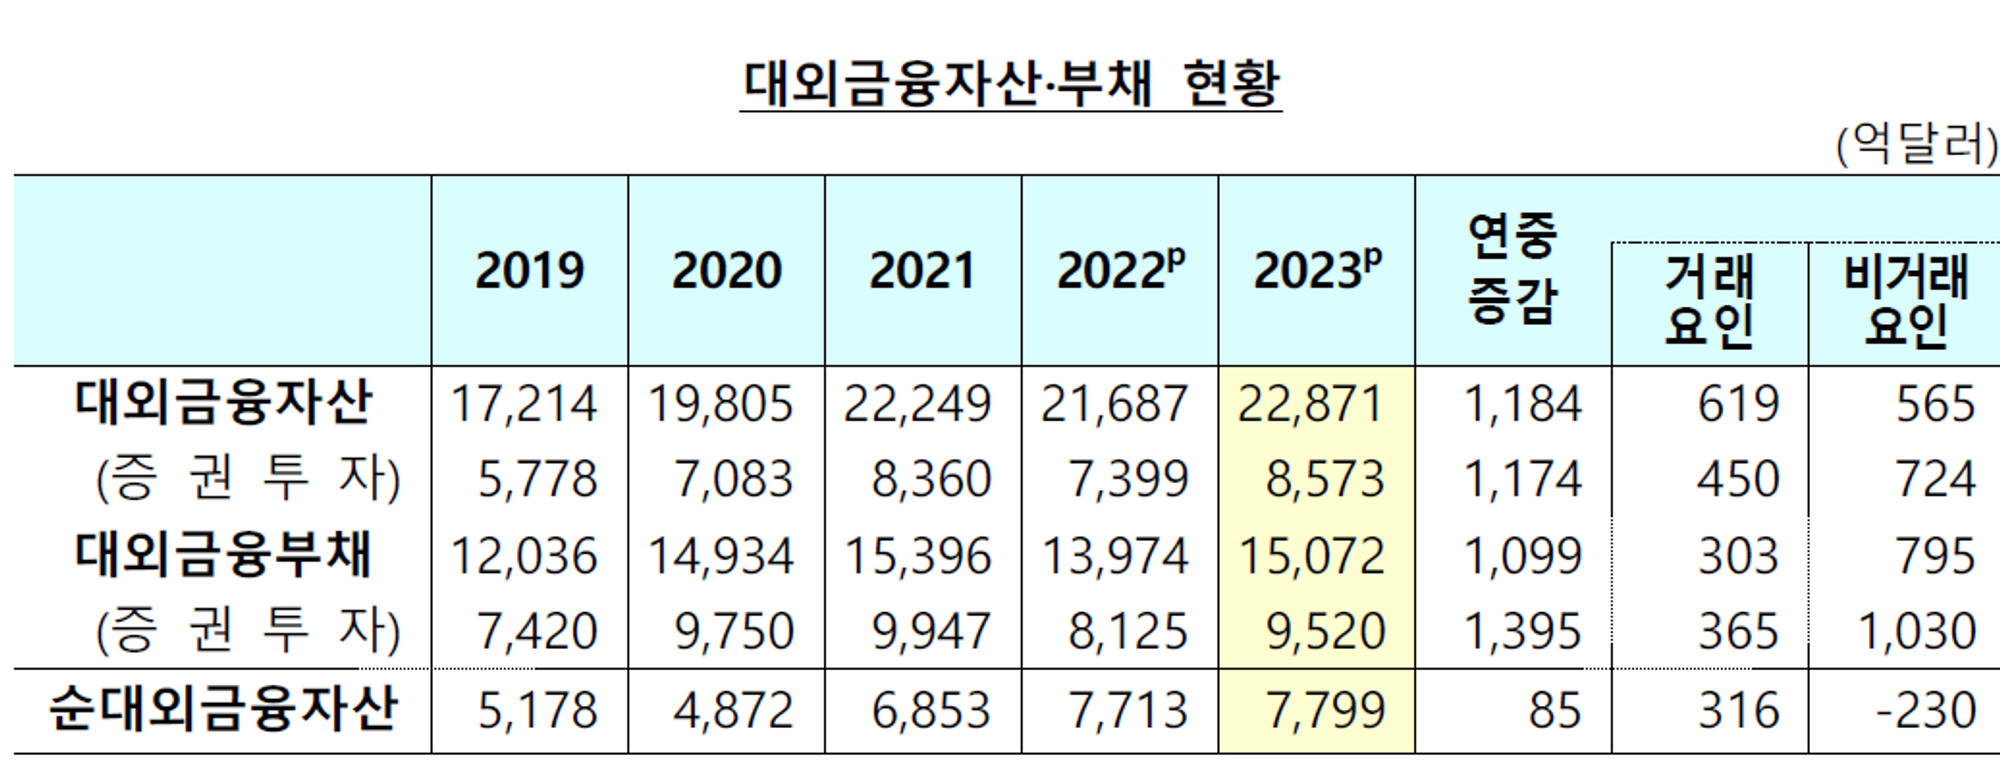 한국의 외환위기 가능성은?